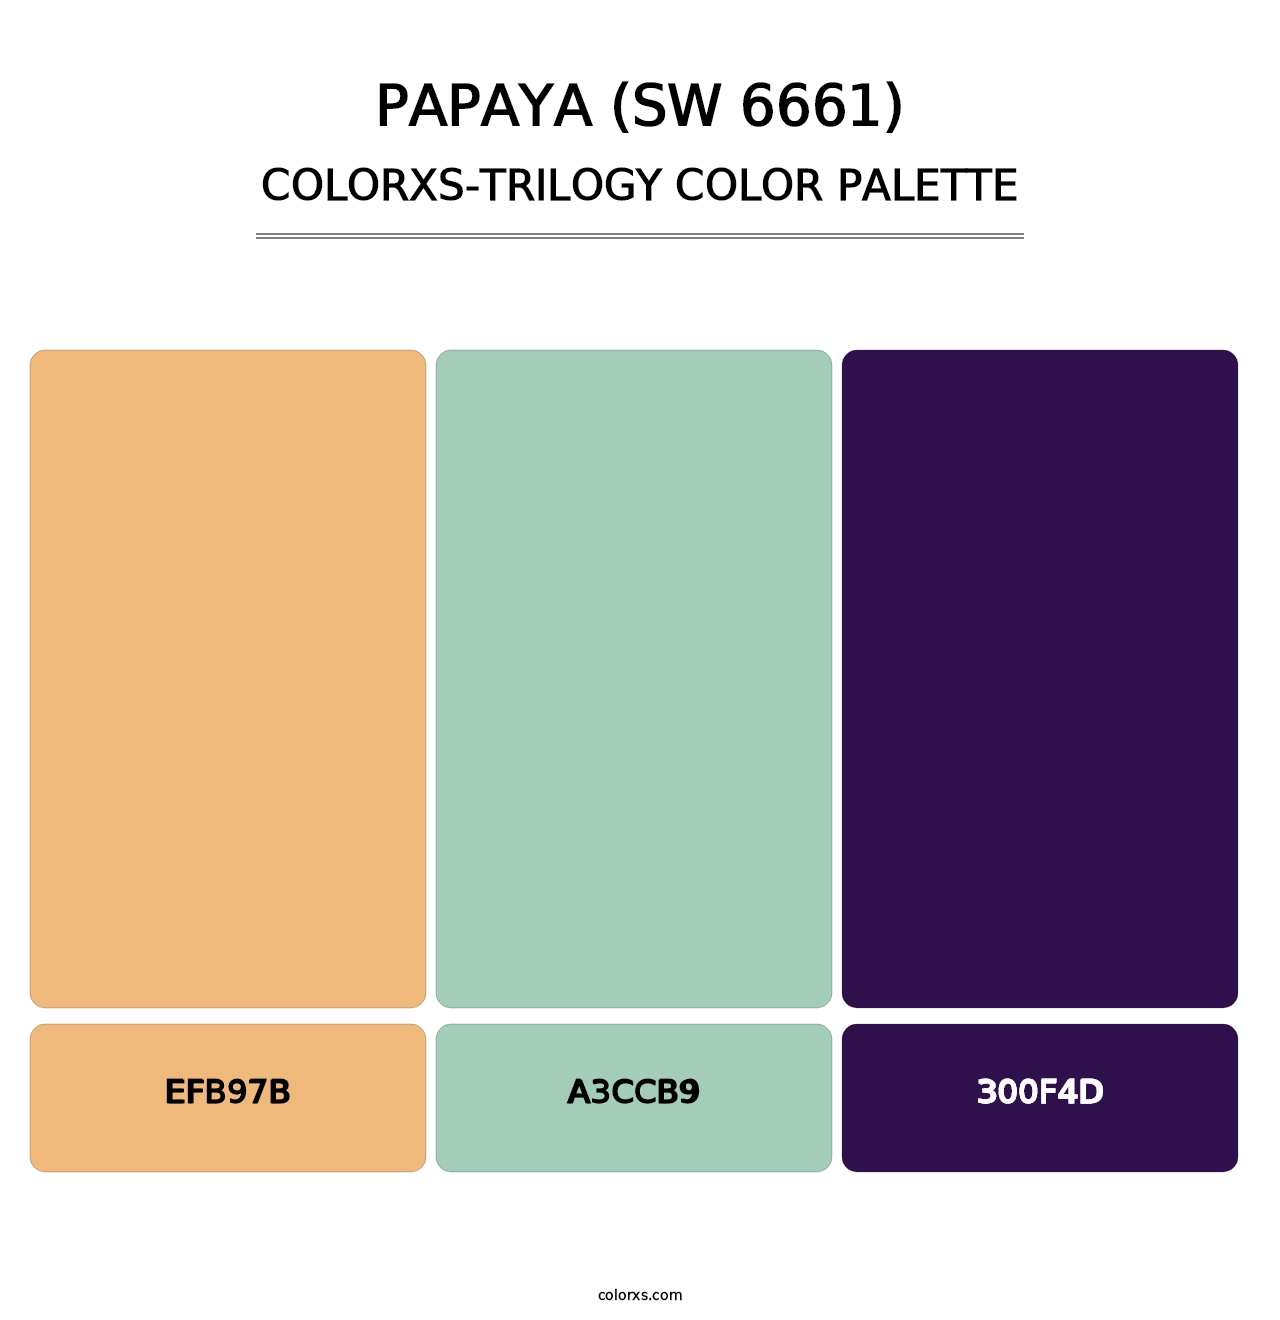 Papaya (SW 6661) - Colorxs Trilogy Palette